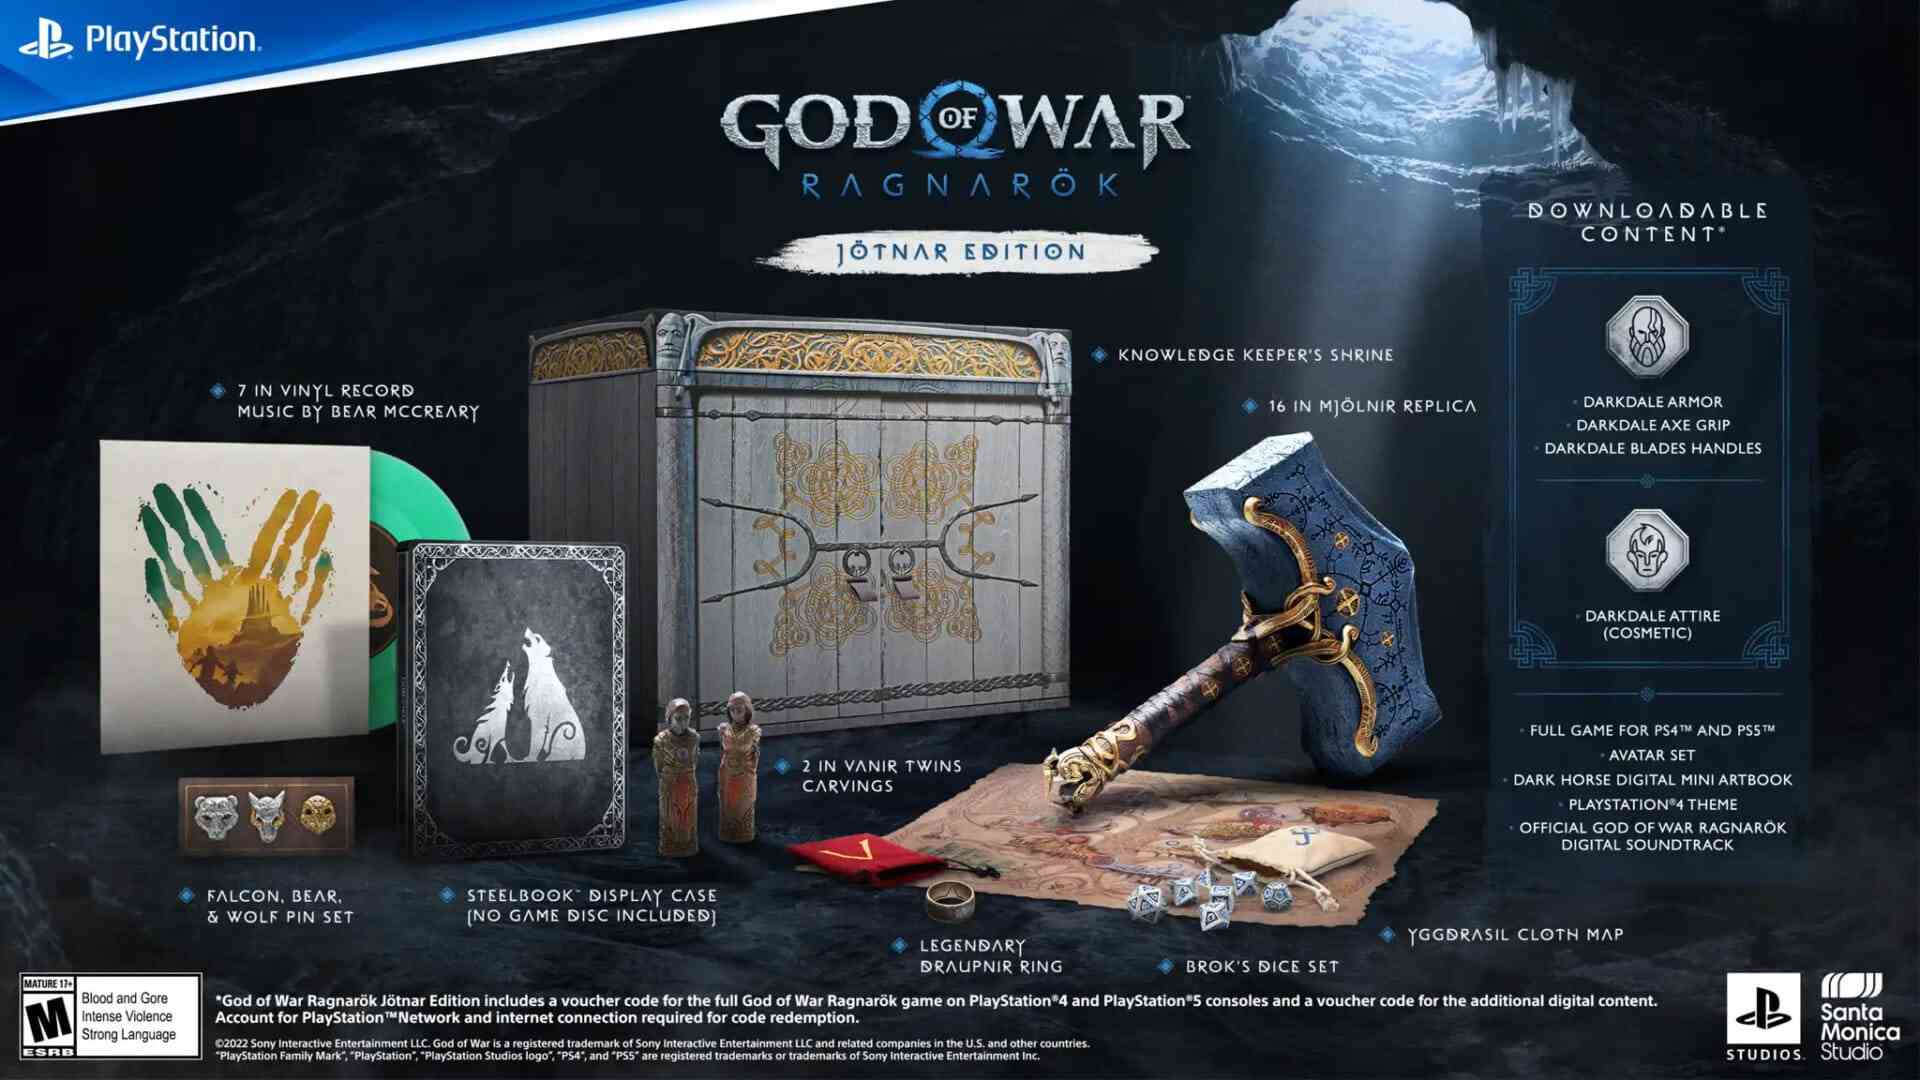 Erscheinungsdatum von God of War Ragnarok November 2022 Collectors Edition Jotnar Edition No Disc Digital Deluxe Vorbestellung beginnt mit der Collector's Edition